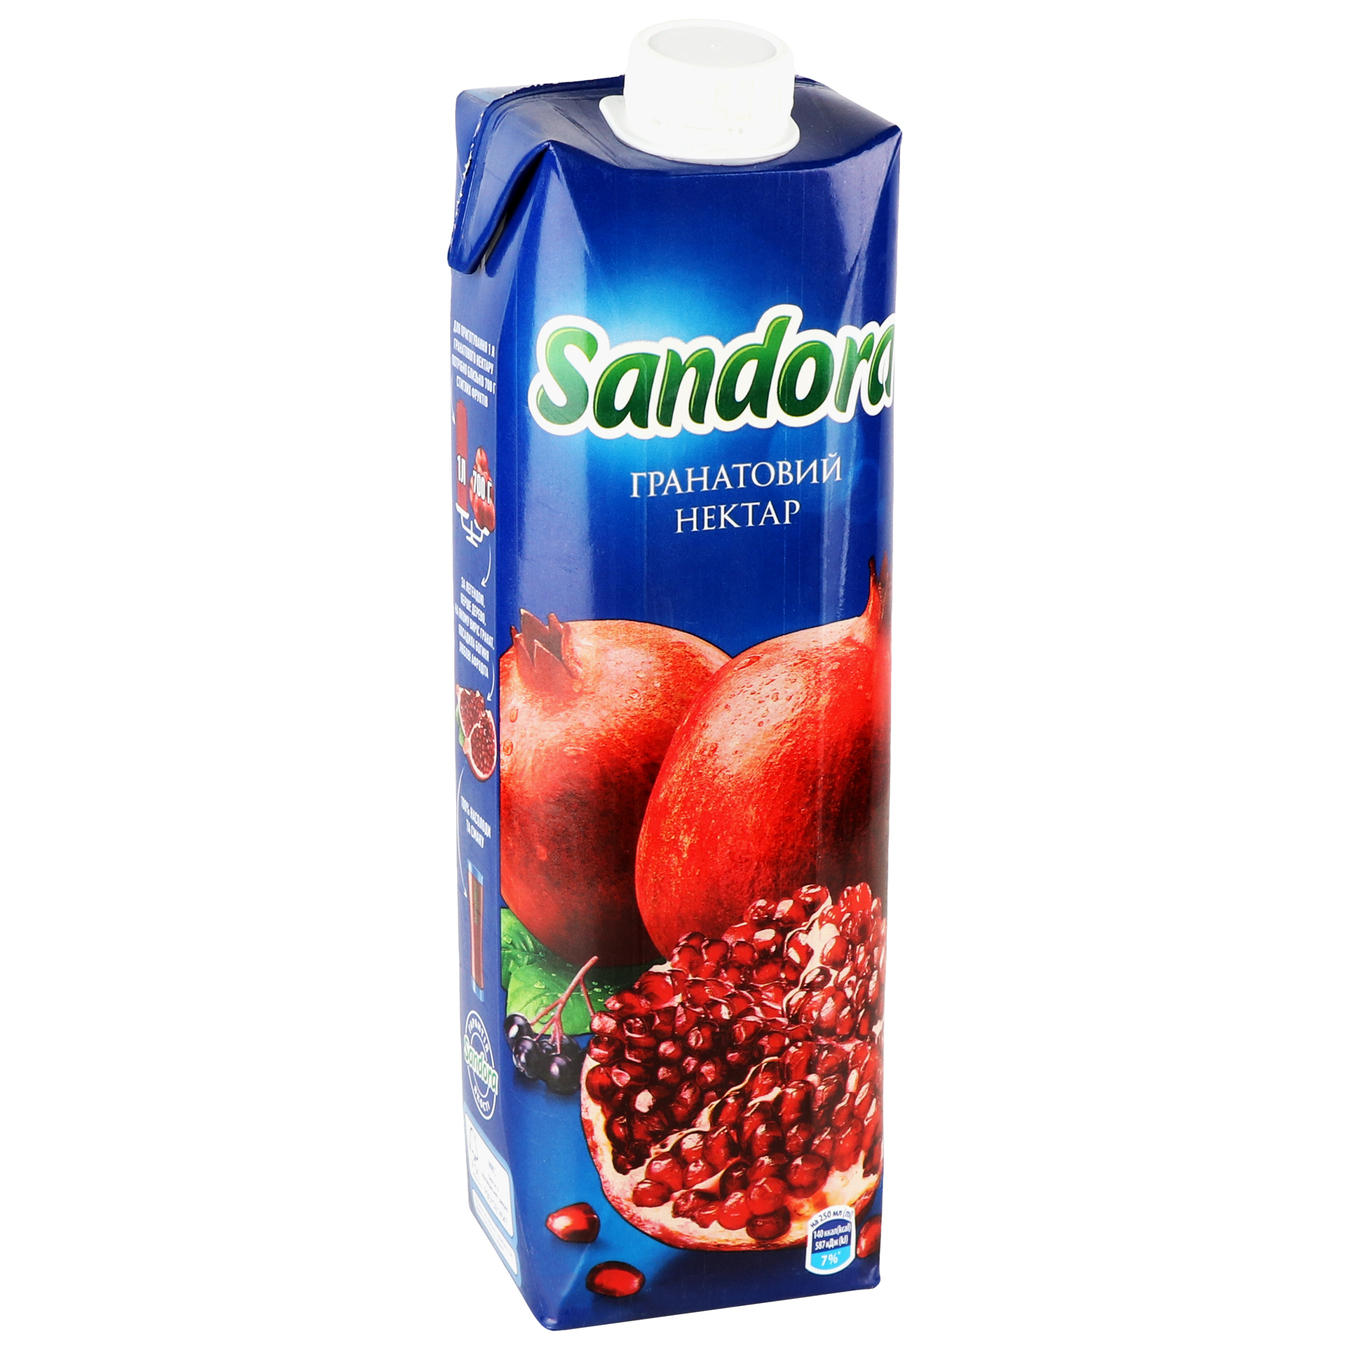 Sandora Pomegrnate Nectar 0,95l 3